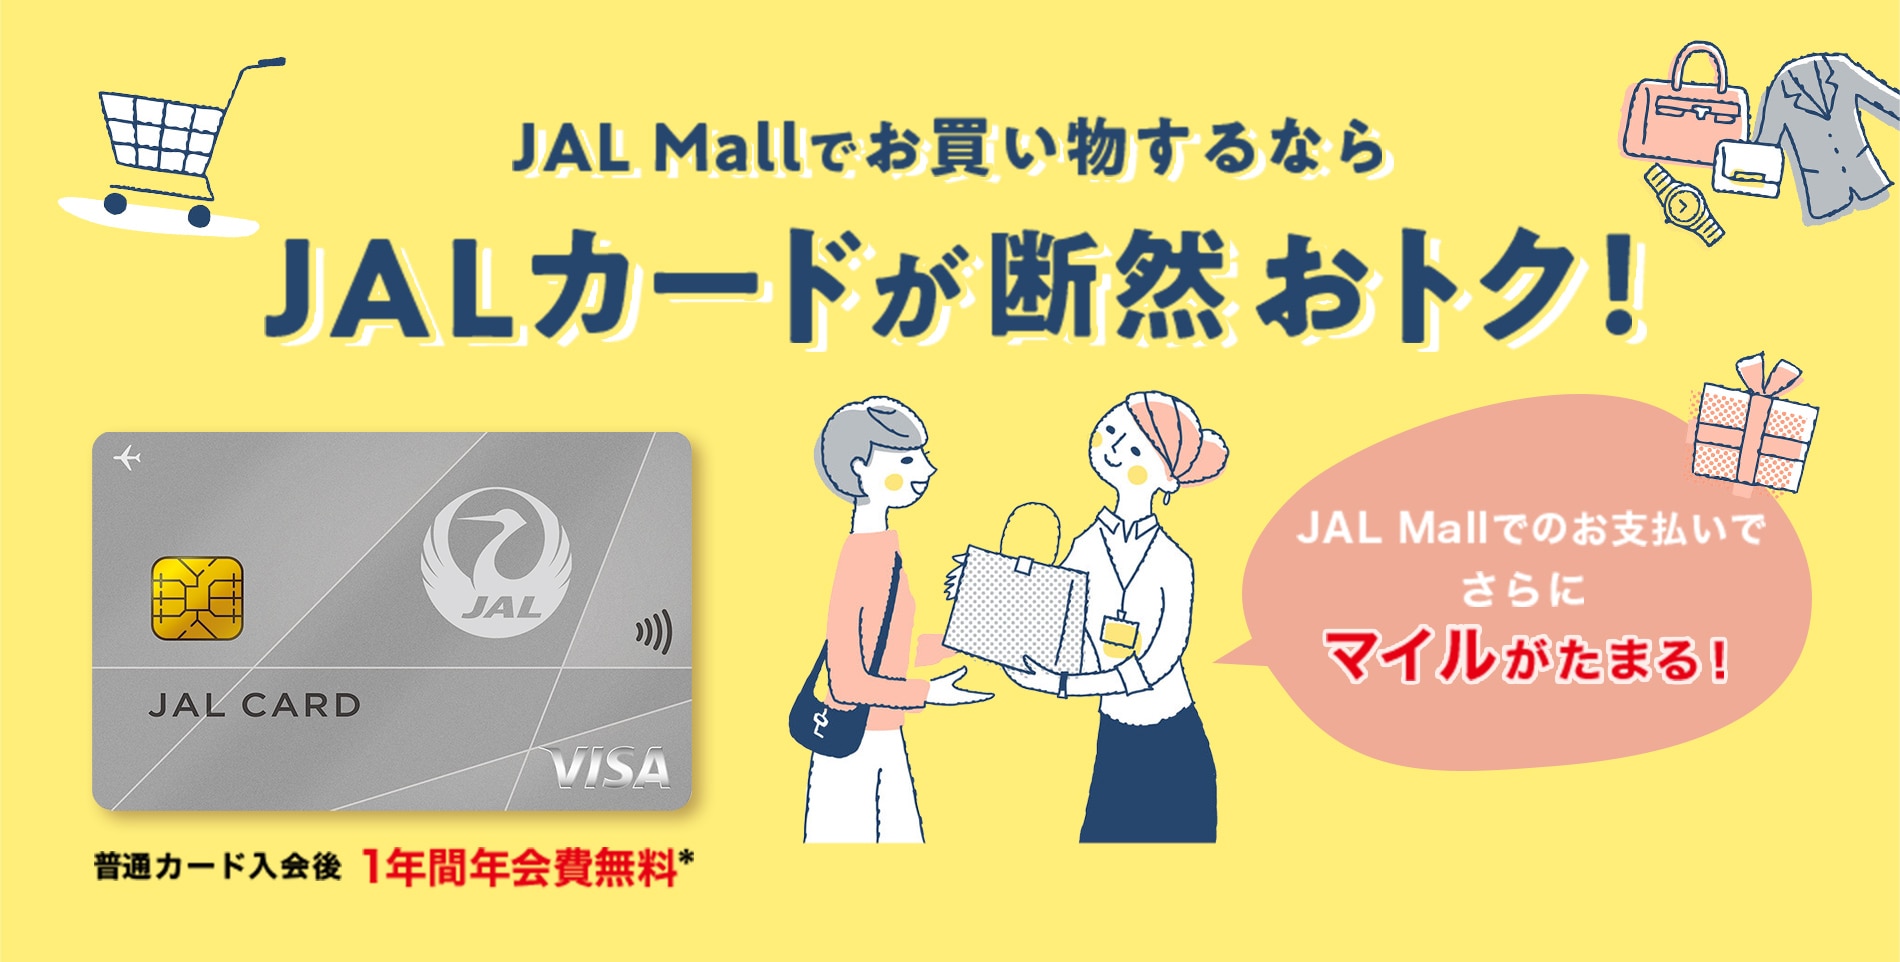 JAL Mallでお買い物するならJALカードが断然おトク！JAL Mallでのお支払いでさらにマイルがたまる！